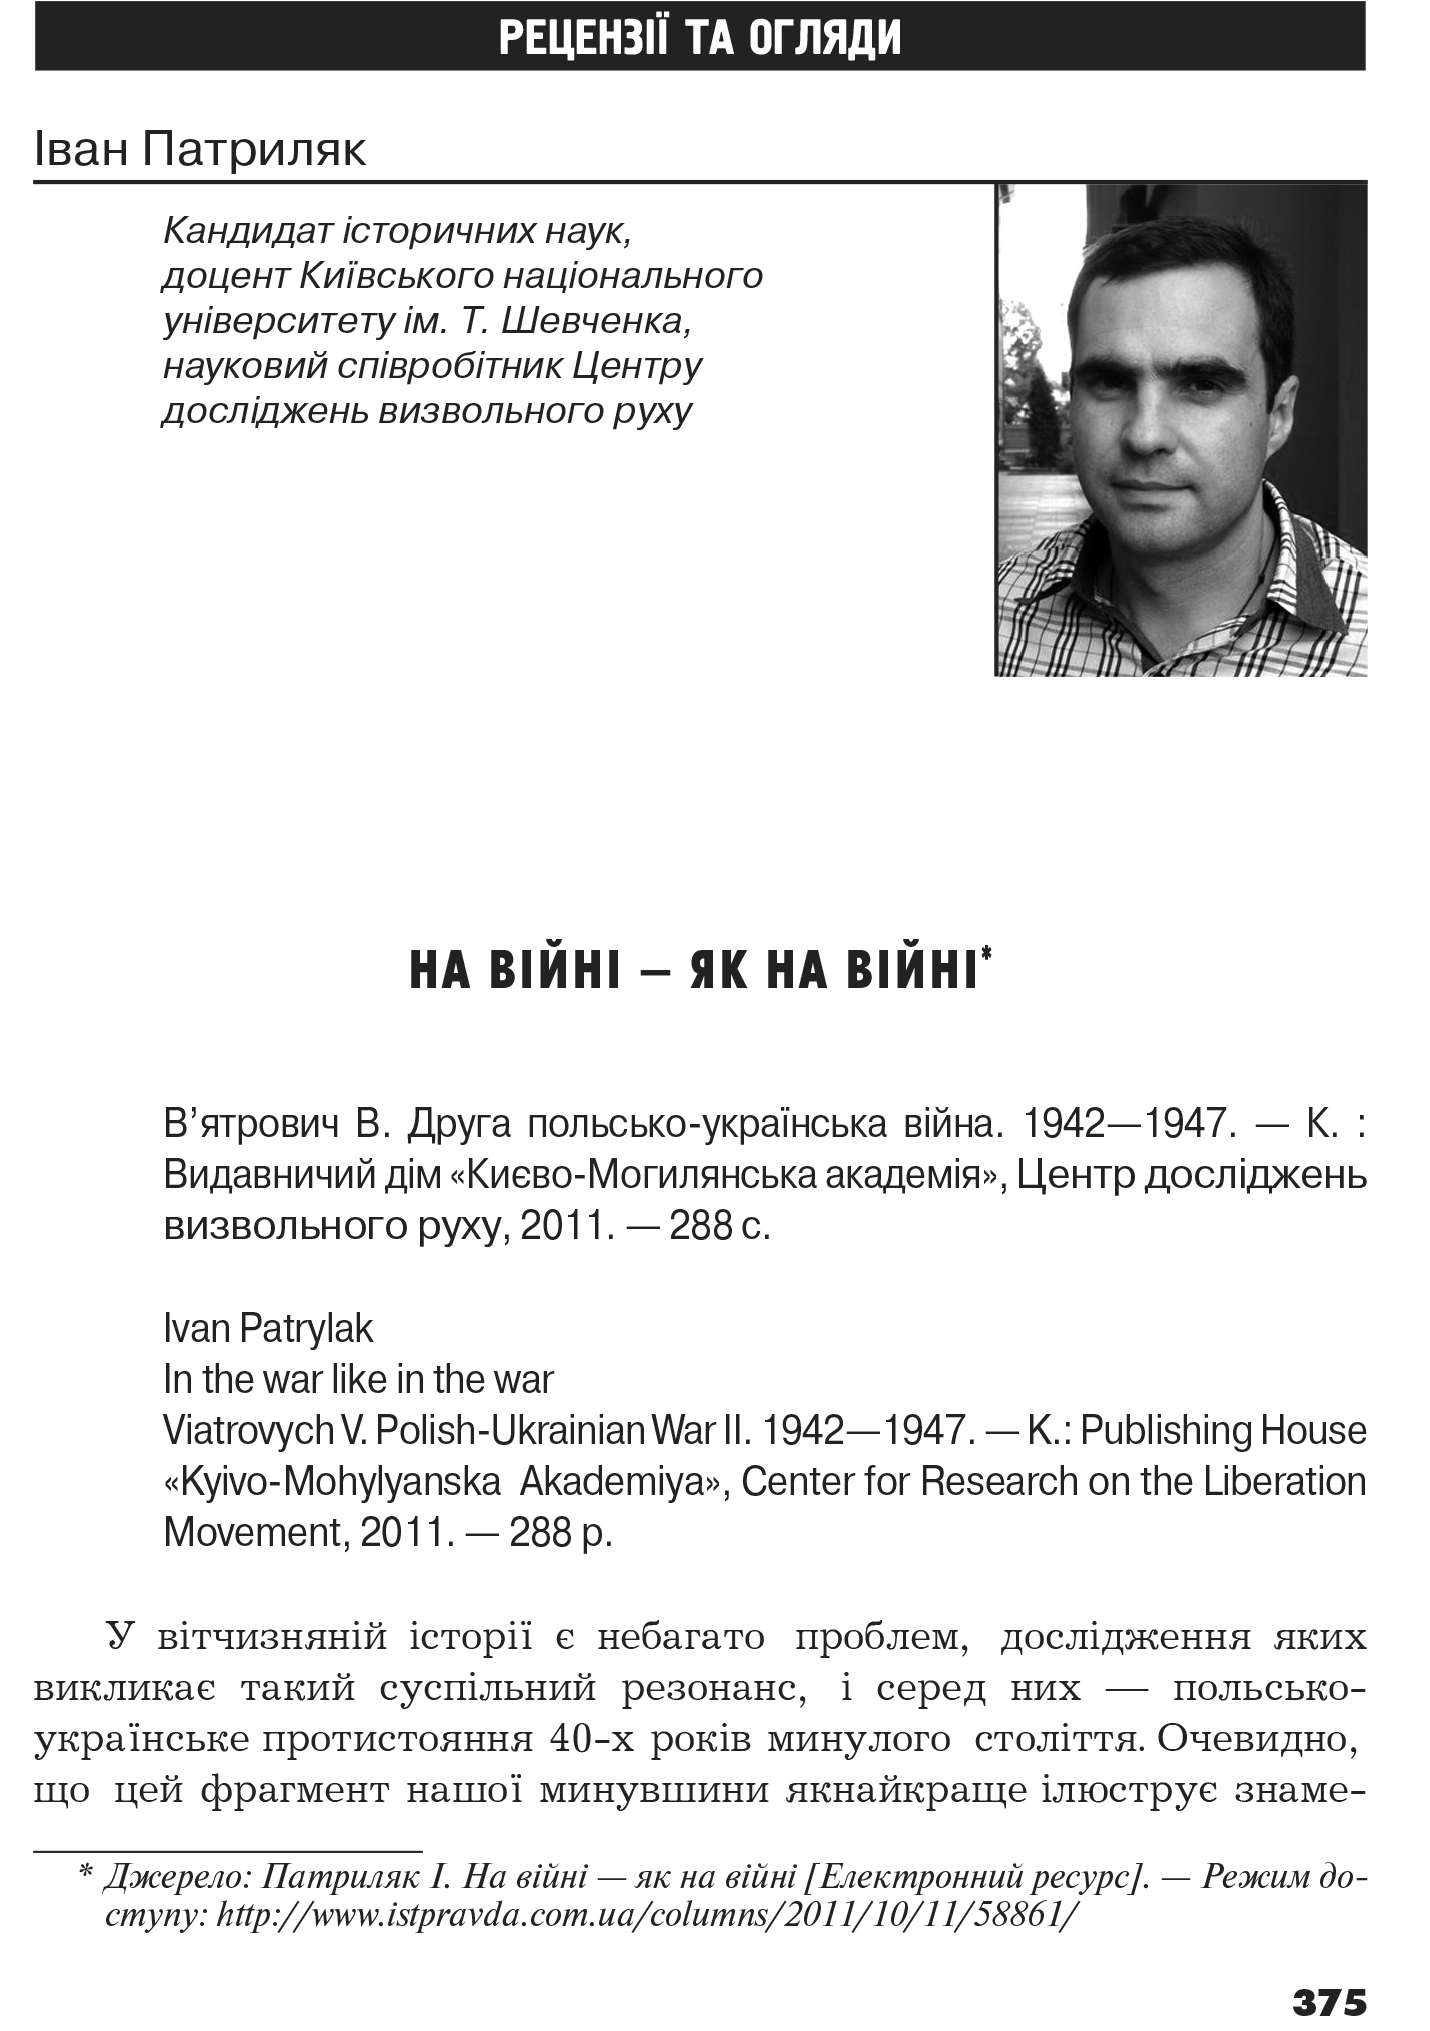 Український визвольний рух №17, ст. 375 - 380